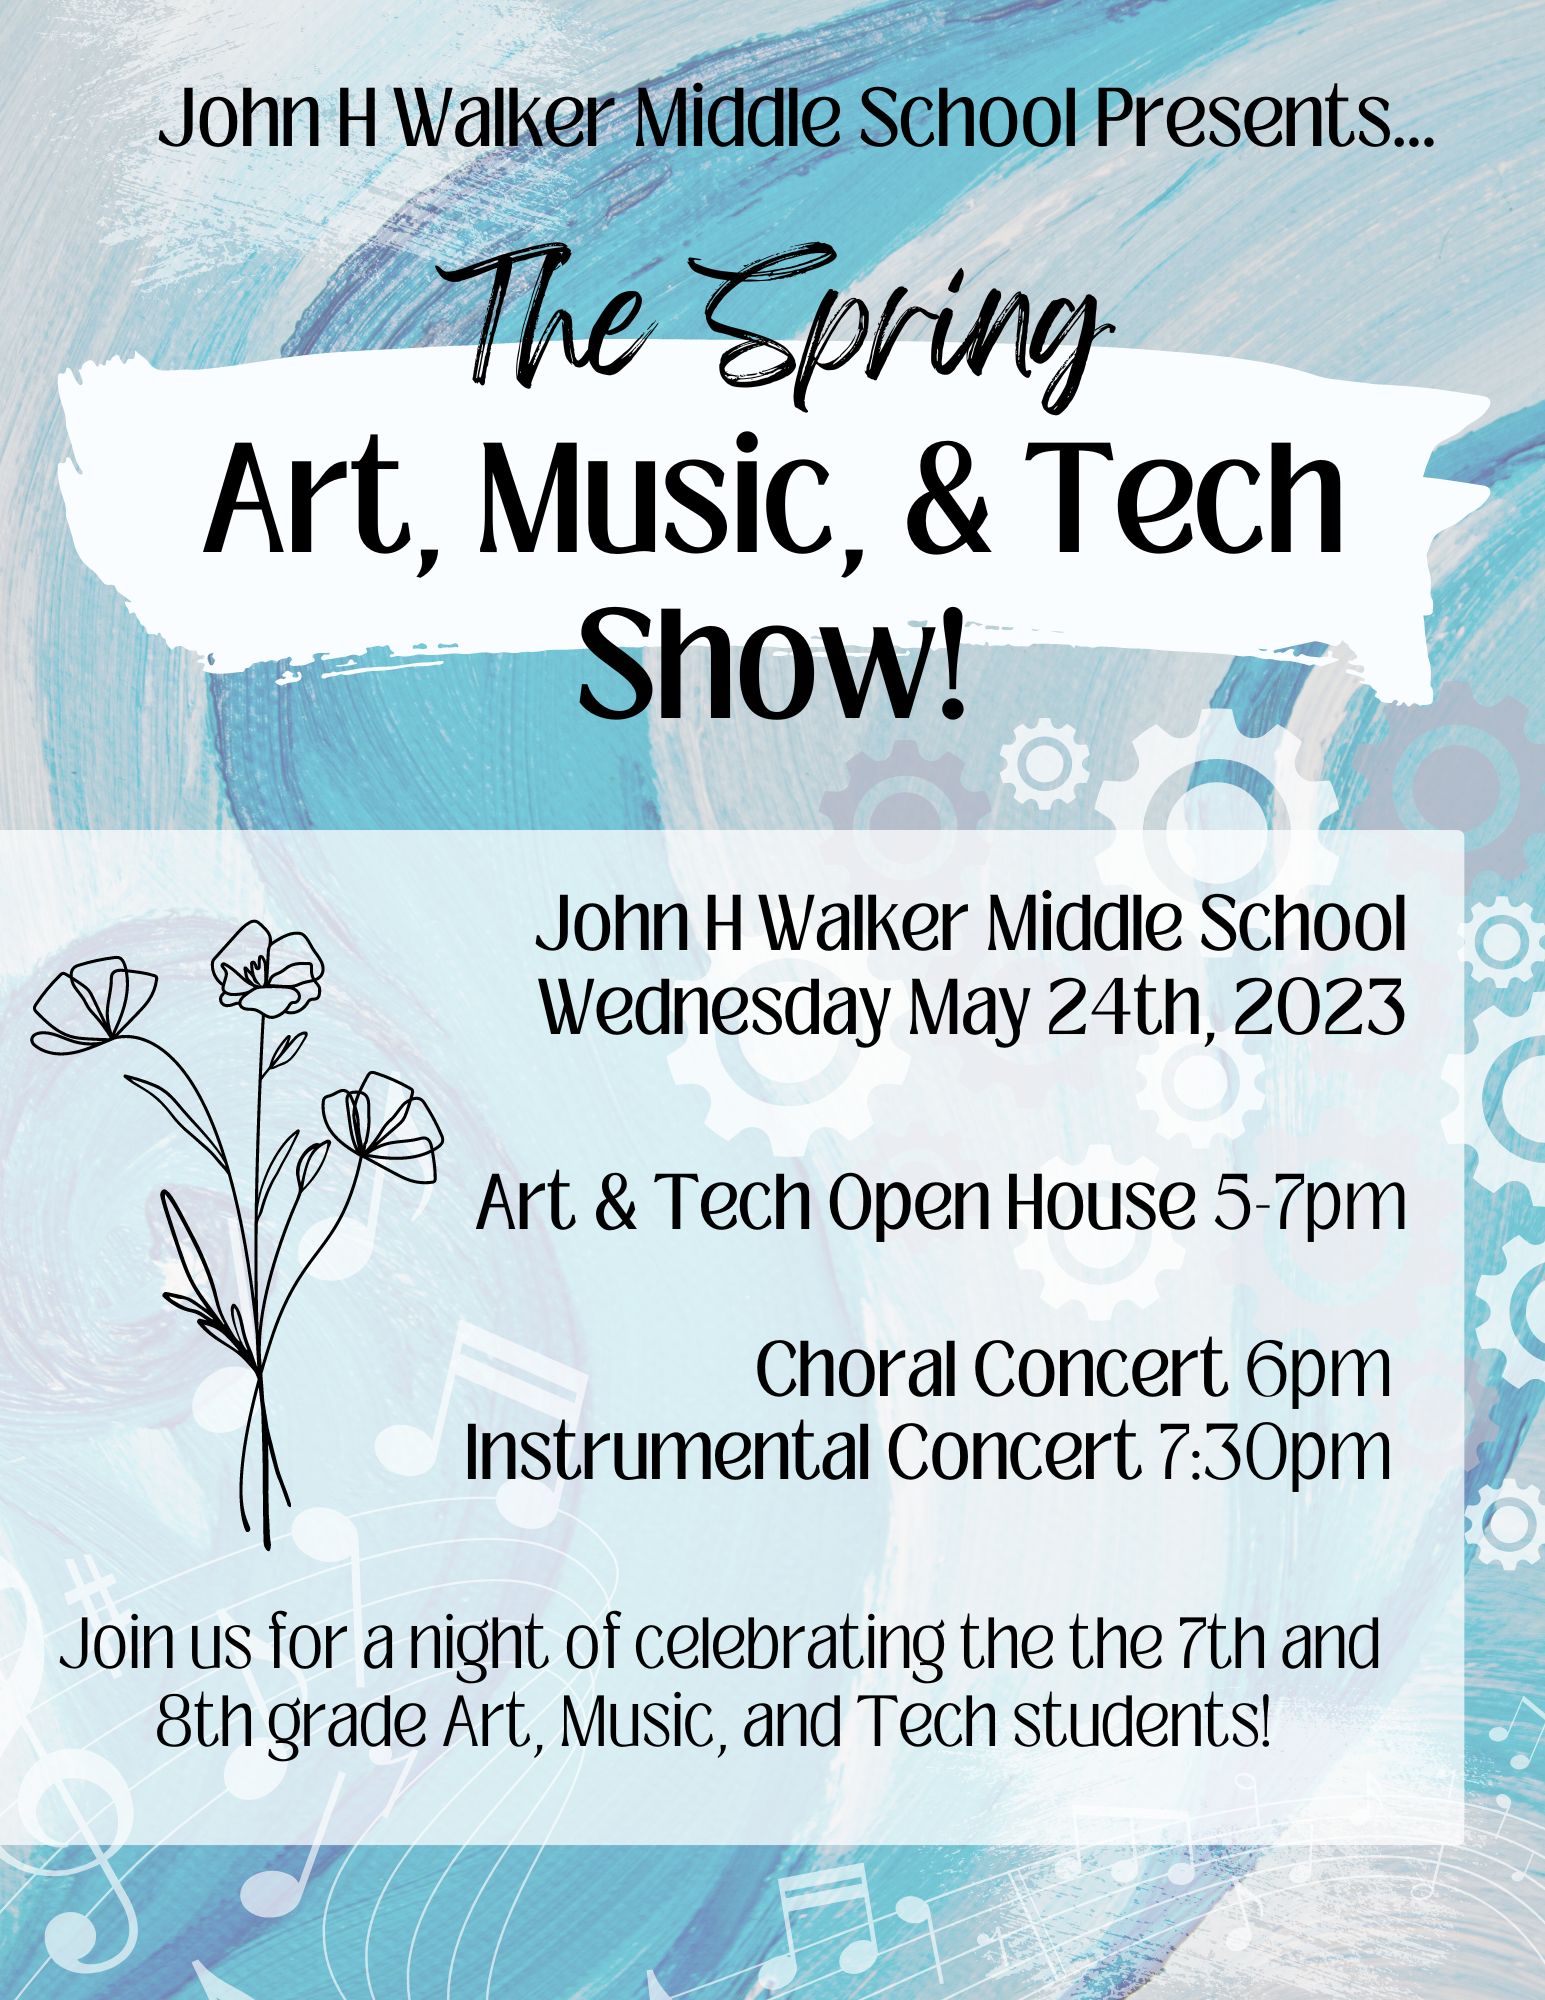 Art, Music & Tech Show